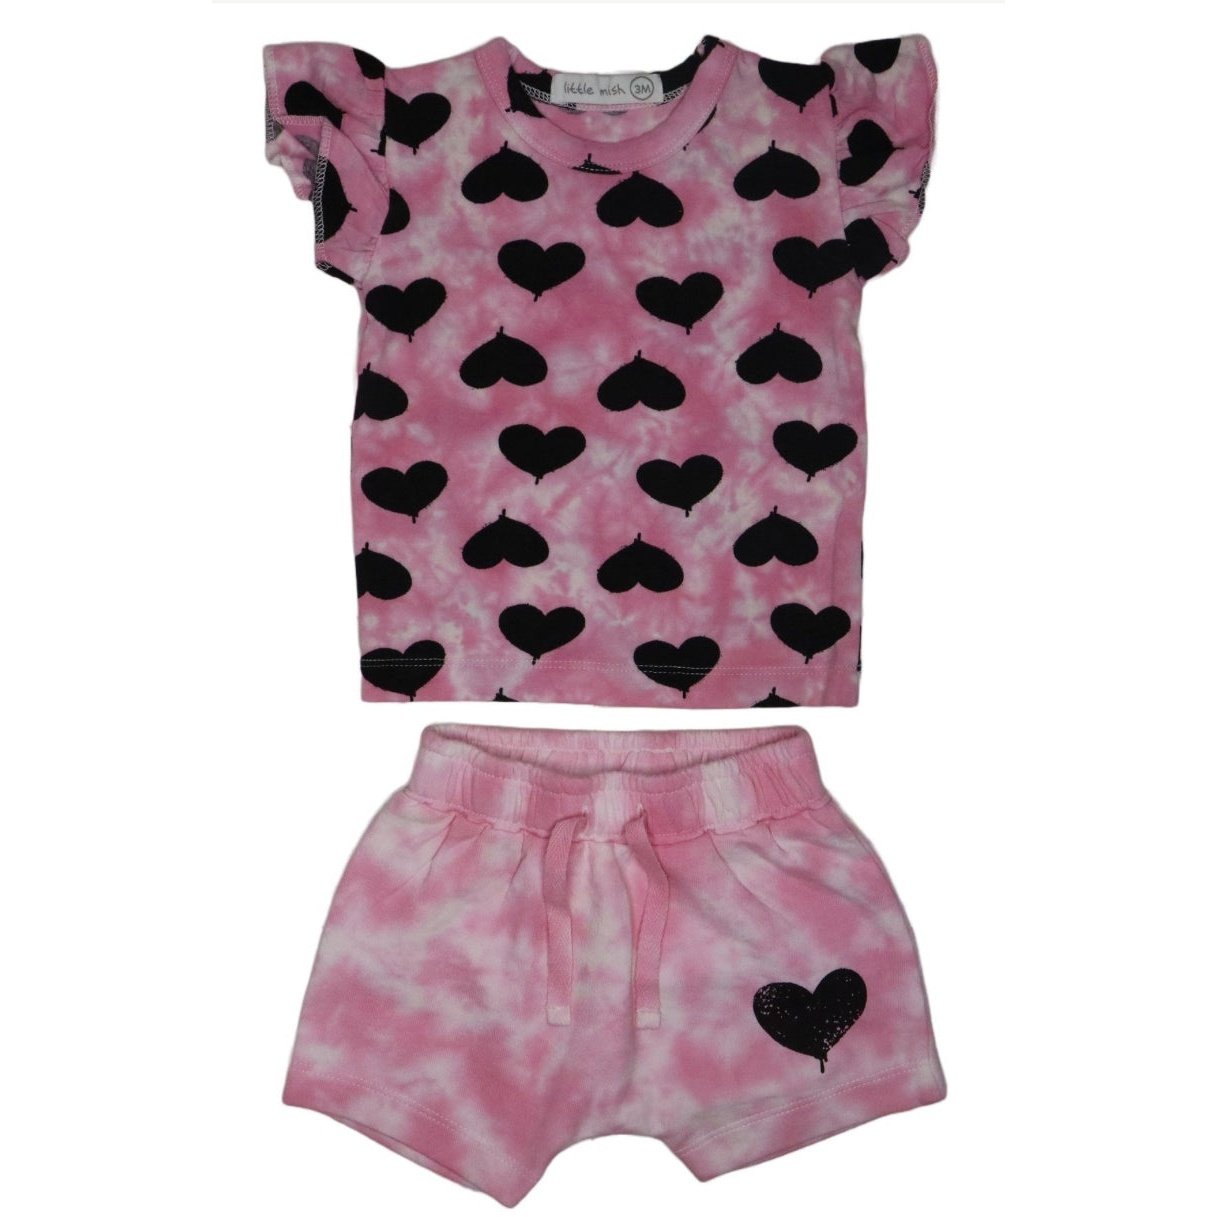 Graffiti Heart Tee & Shorts Set - Twinkle Twinkle Little One